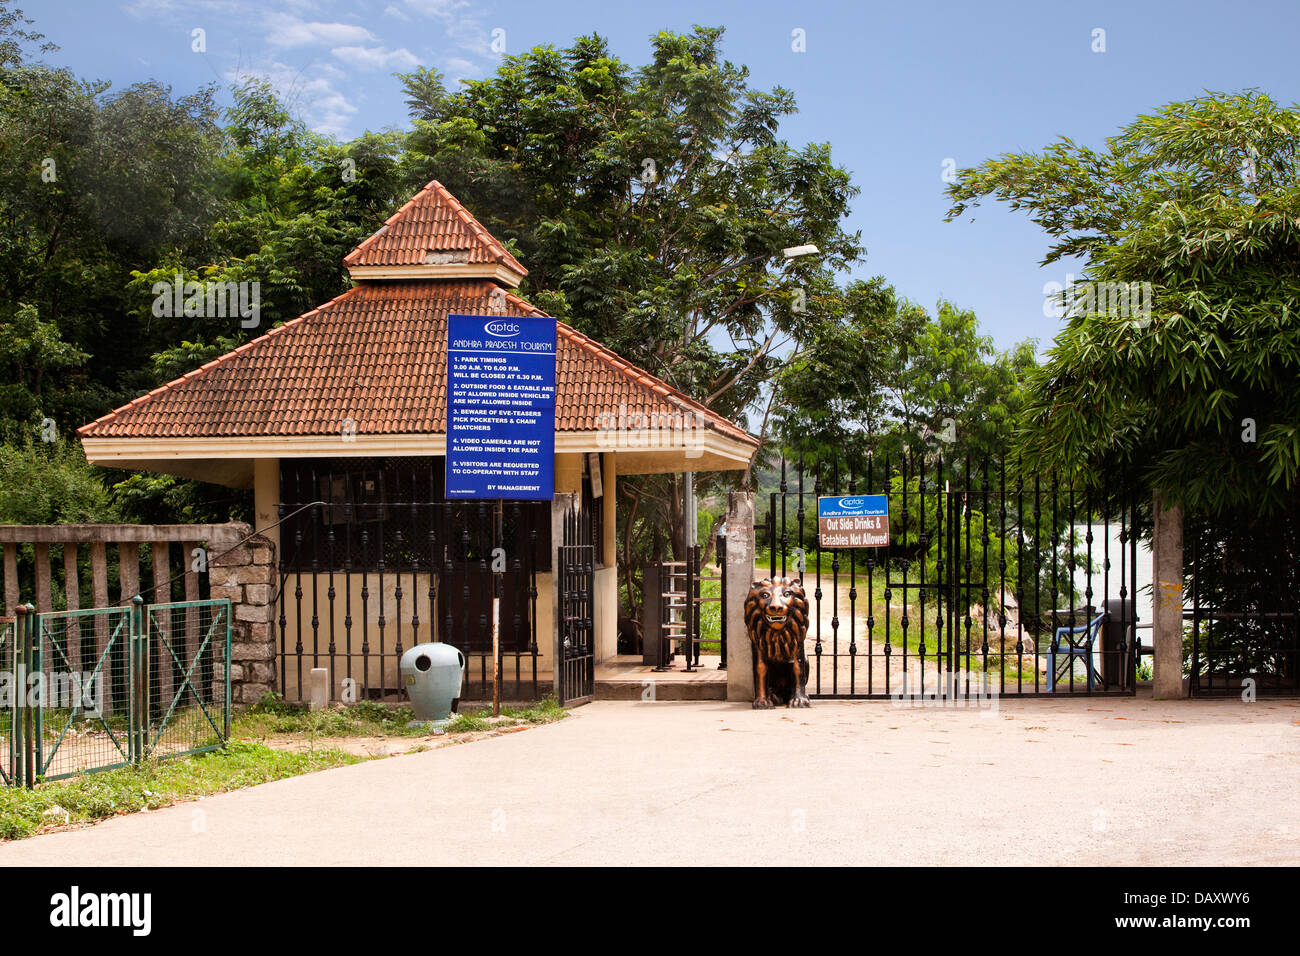 Eingang eines Parks, Durgam Chevuru See, Rangareddy, Andhra Pradesh, Indien Stockfoto